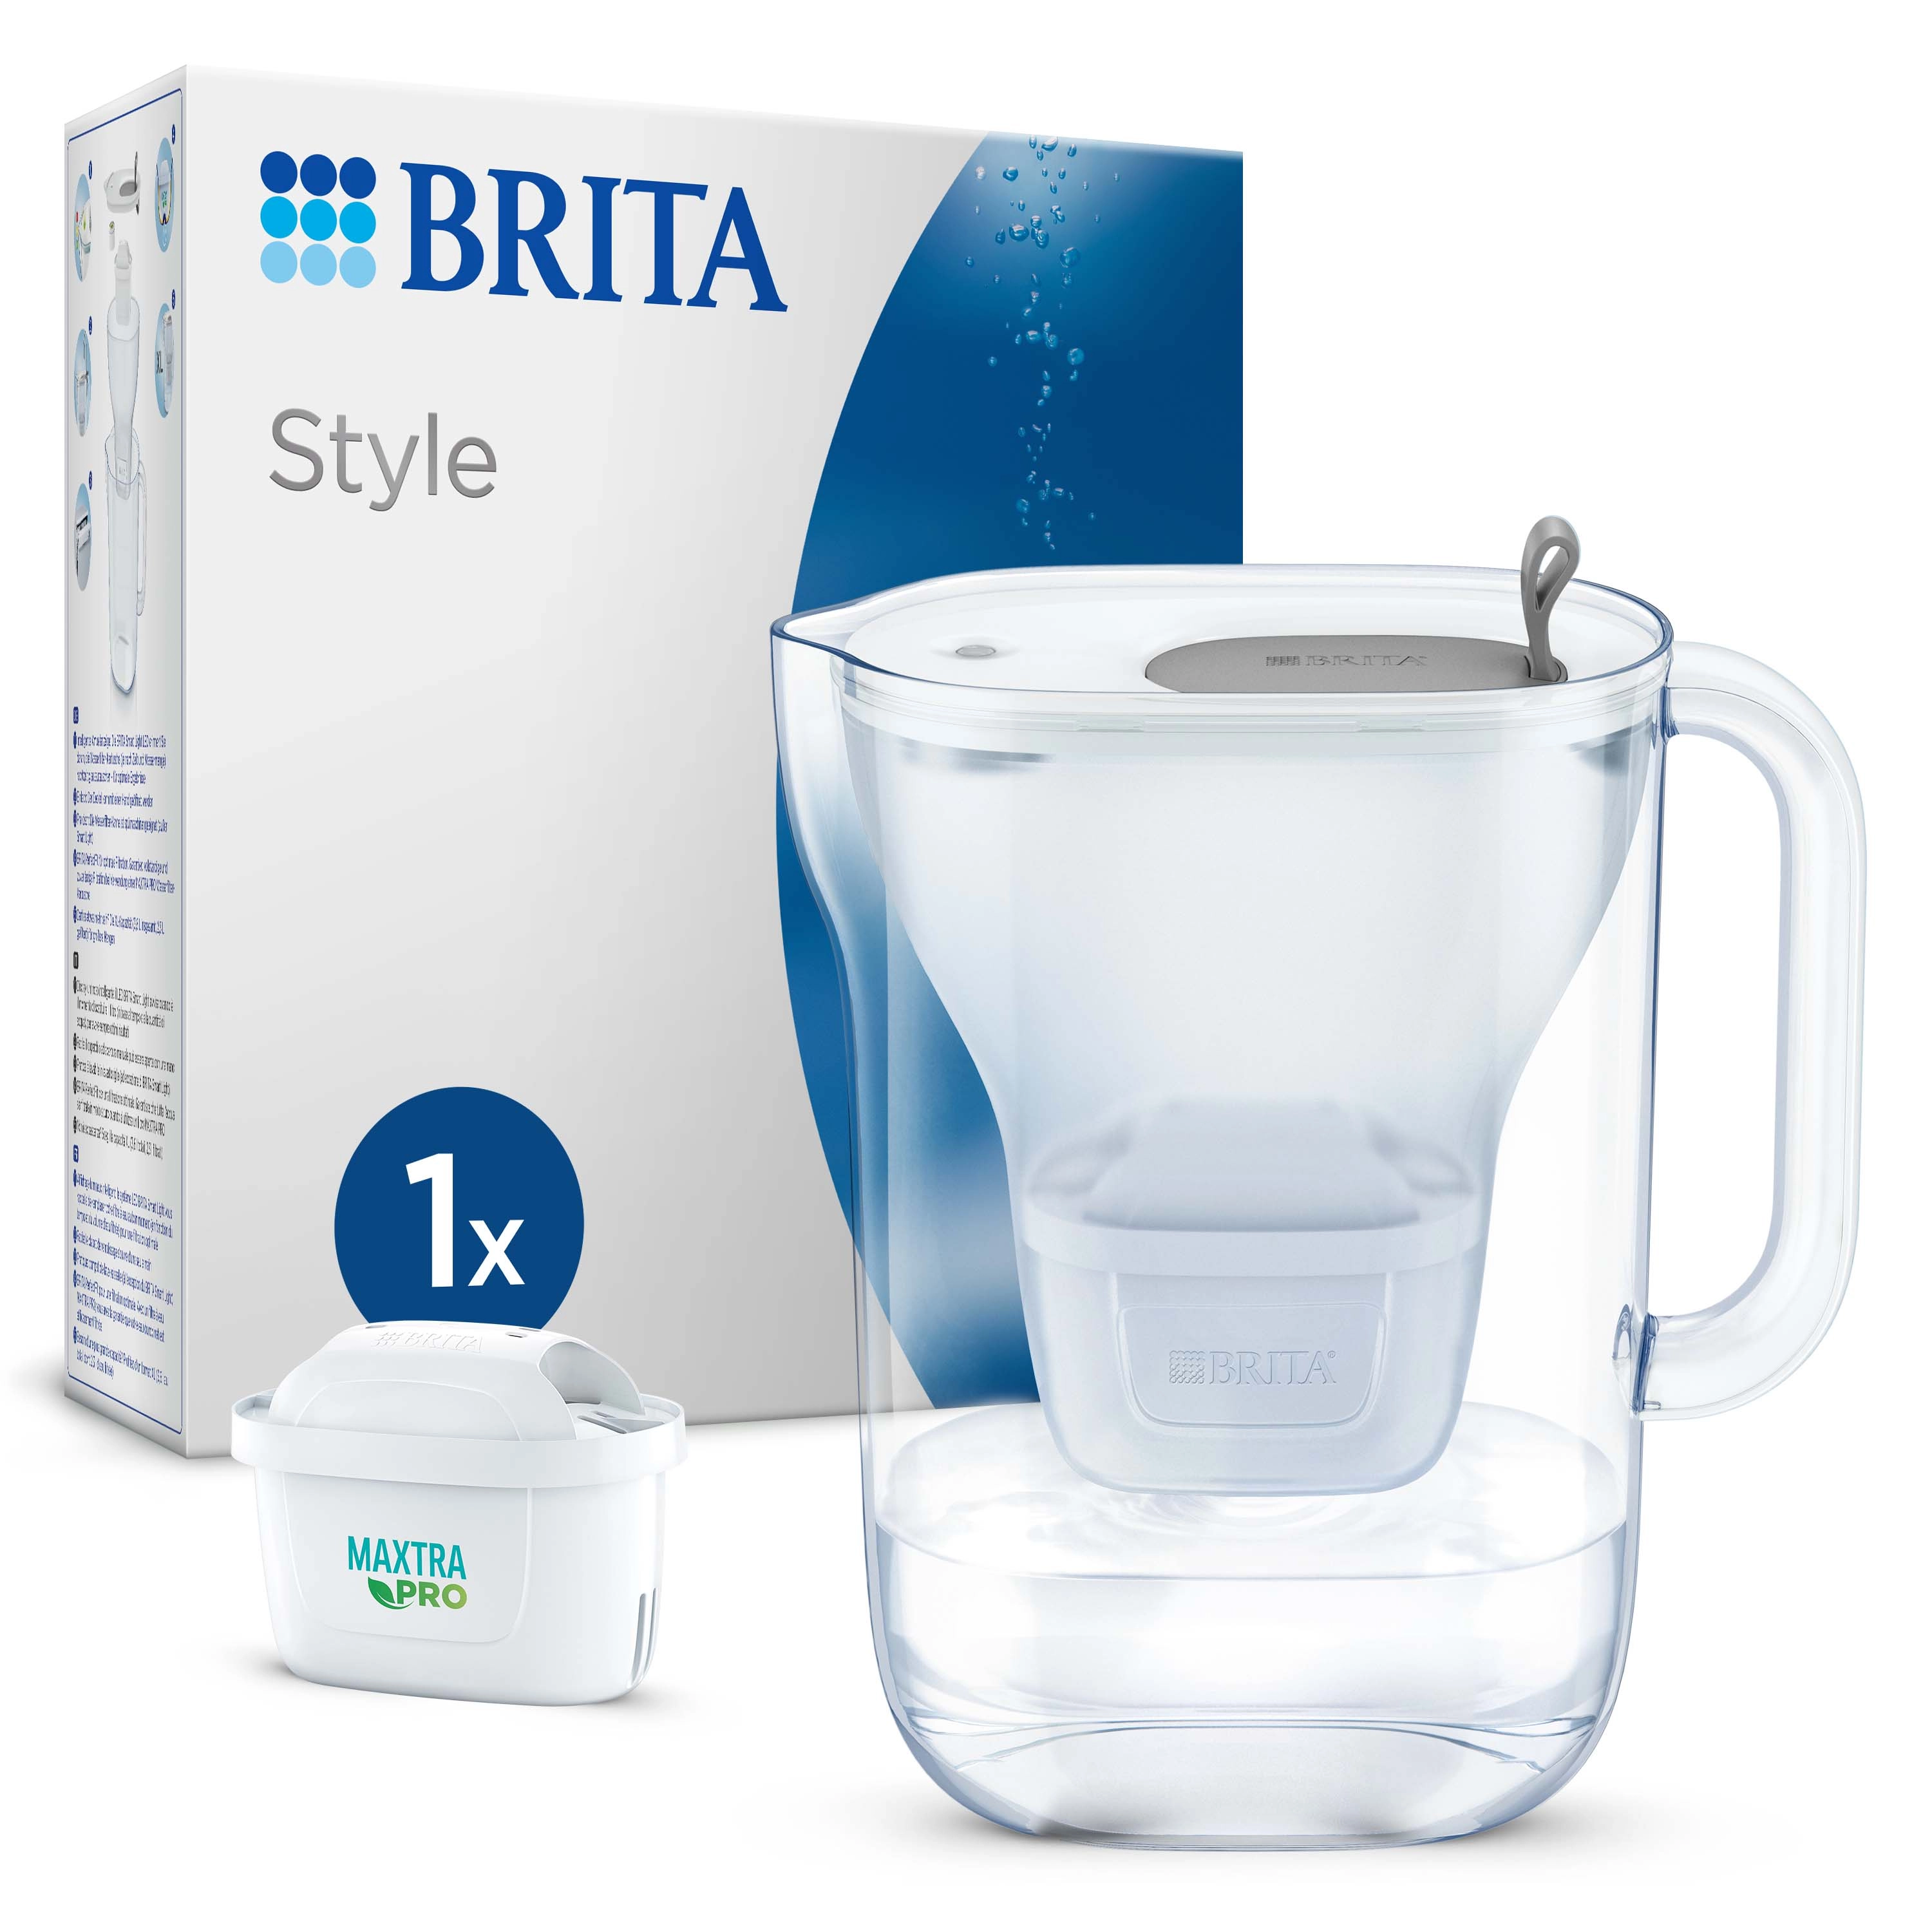 Caraffa filtrante per acqua Brita Style Grey 2,4 l con 1 filtro incluso